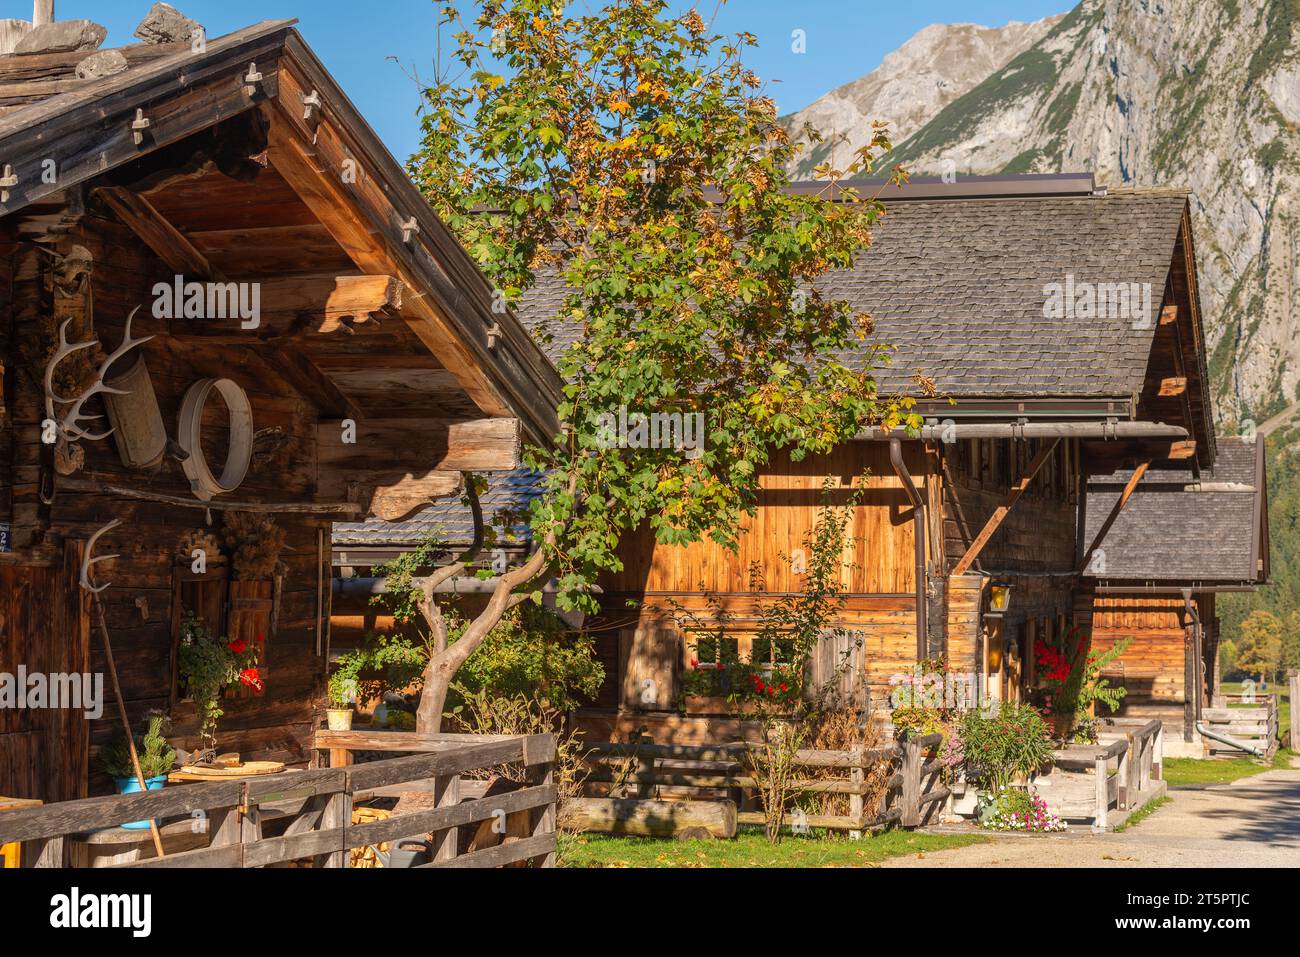 Villaggio alpino di Ing a 1227 m nella Valle dell'Ing, Parco naturale Karwendel, catena montuosa dell'alta montagna, Tirolo, Austria, Europa Foto Stock